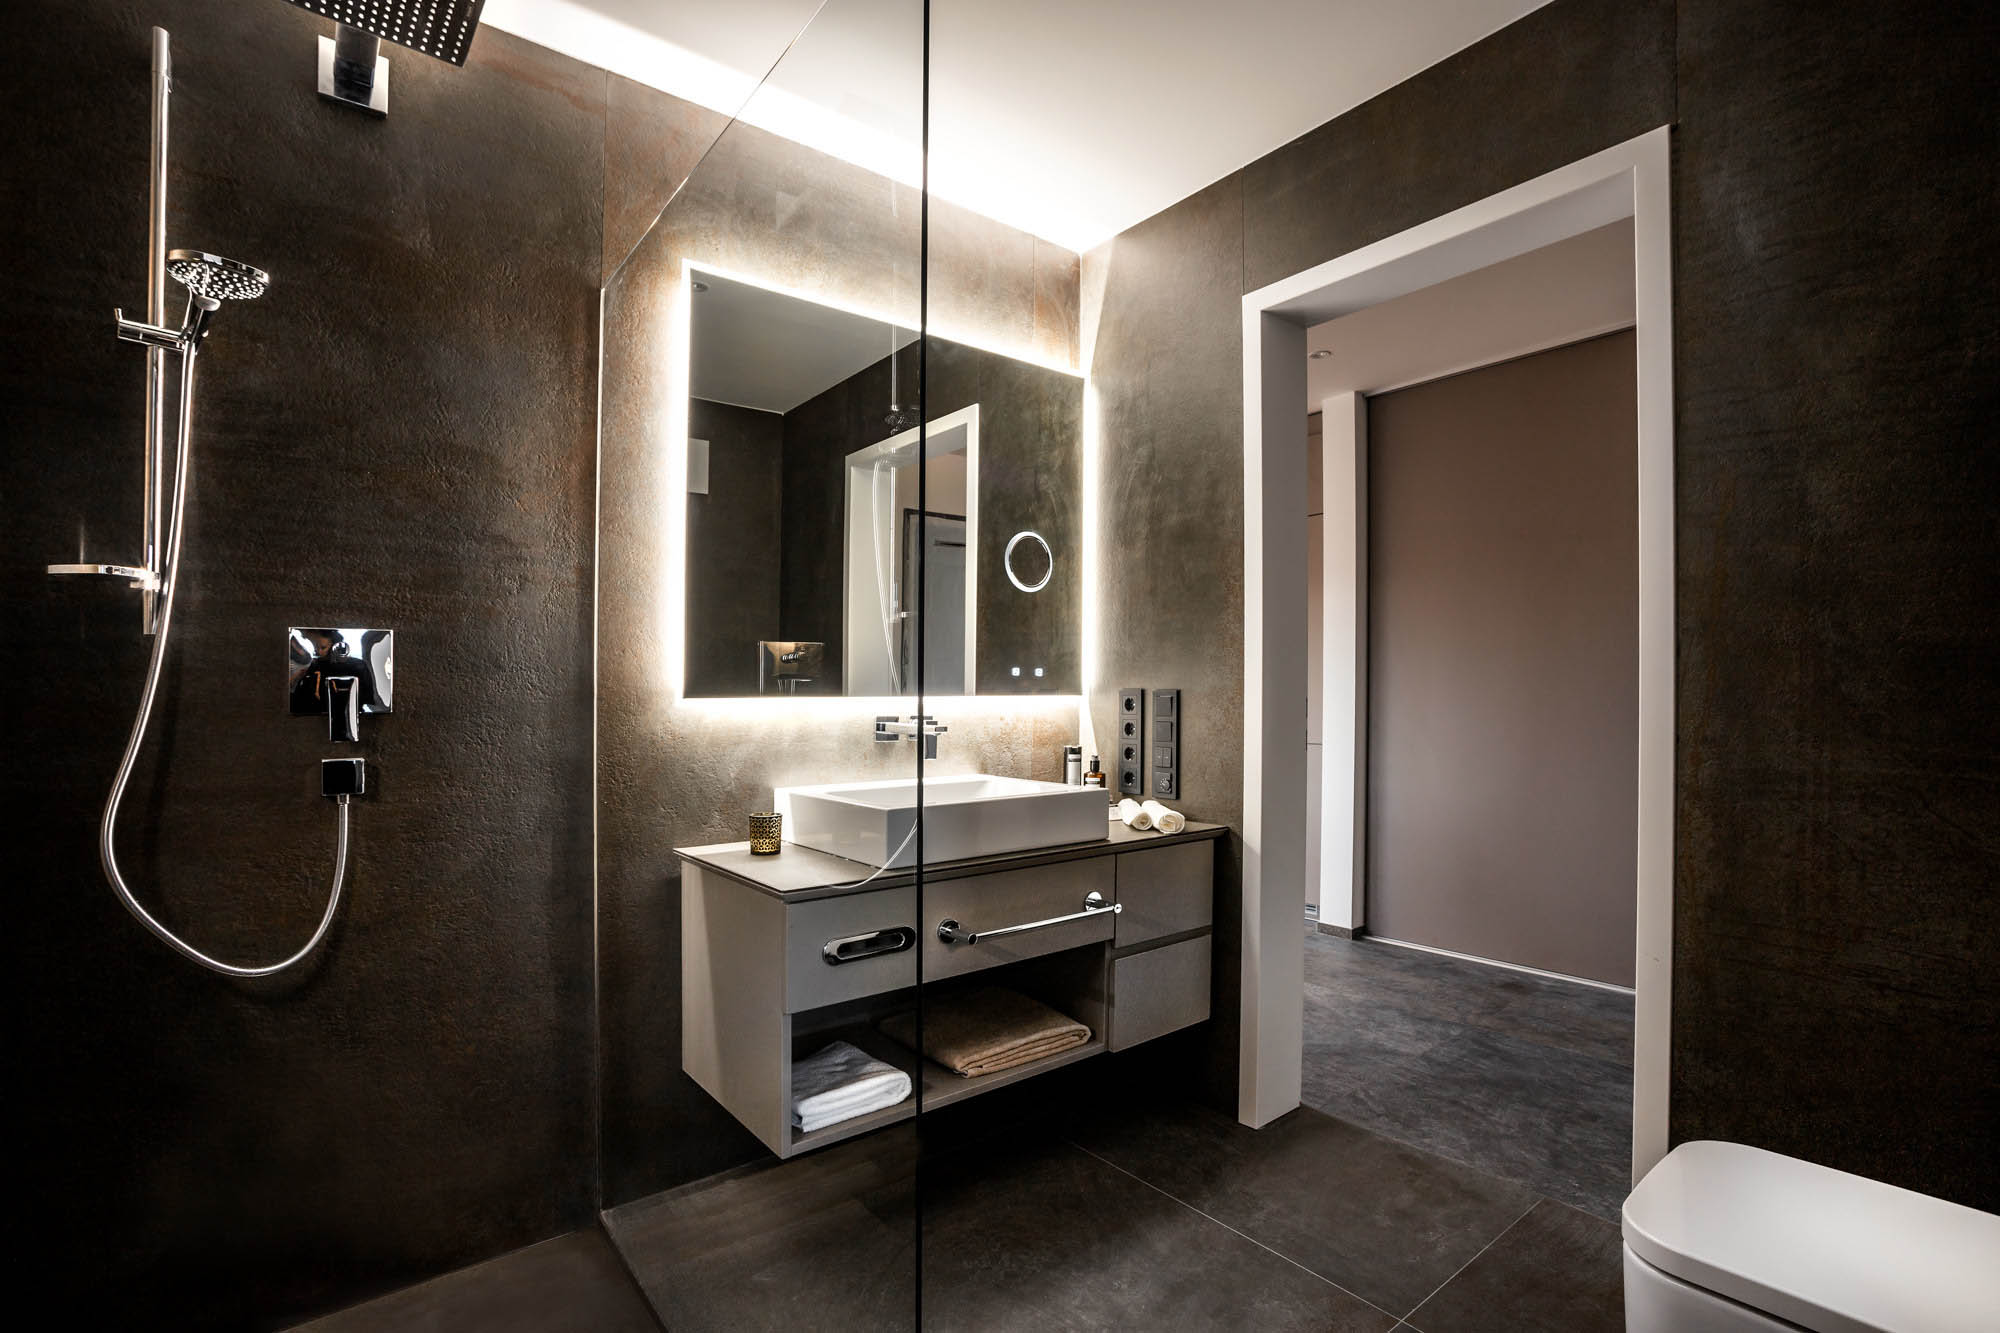 Das moderne Bad mit separater Dusche ist dunklem Steinboden ausgestattet. auch die Wände sind in dunkel gehalten.